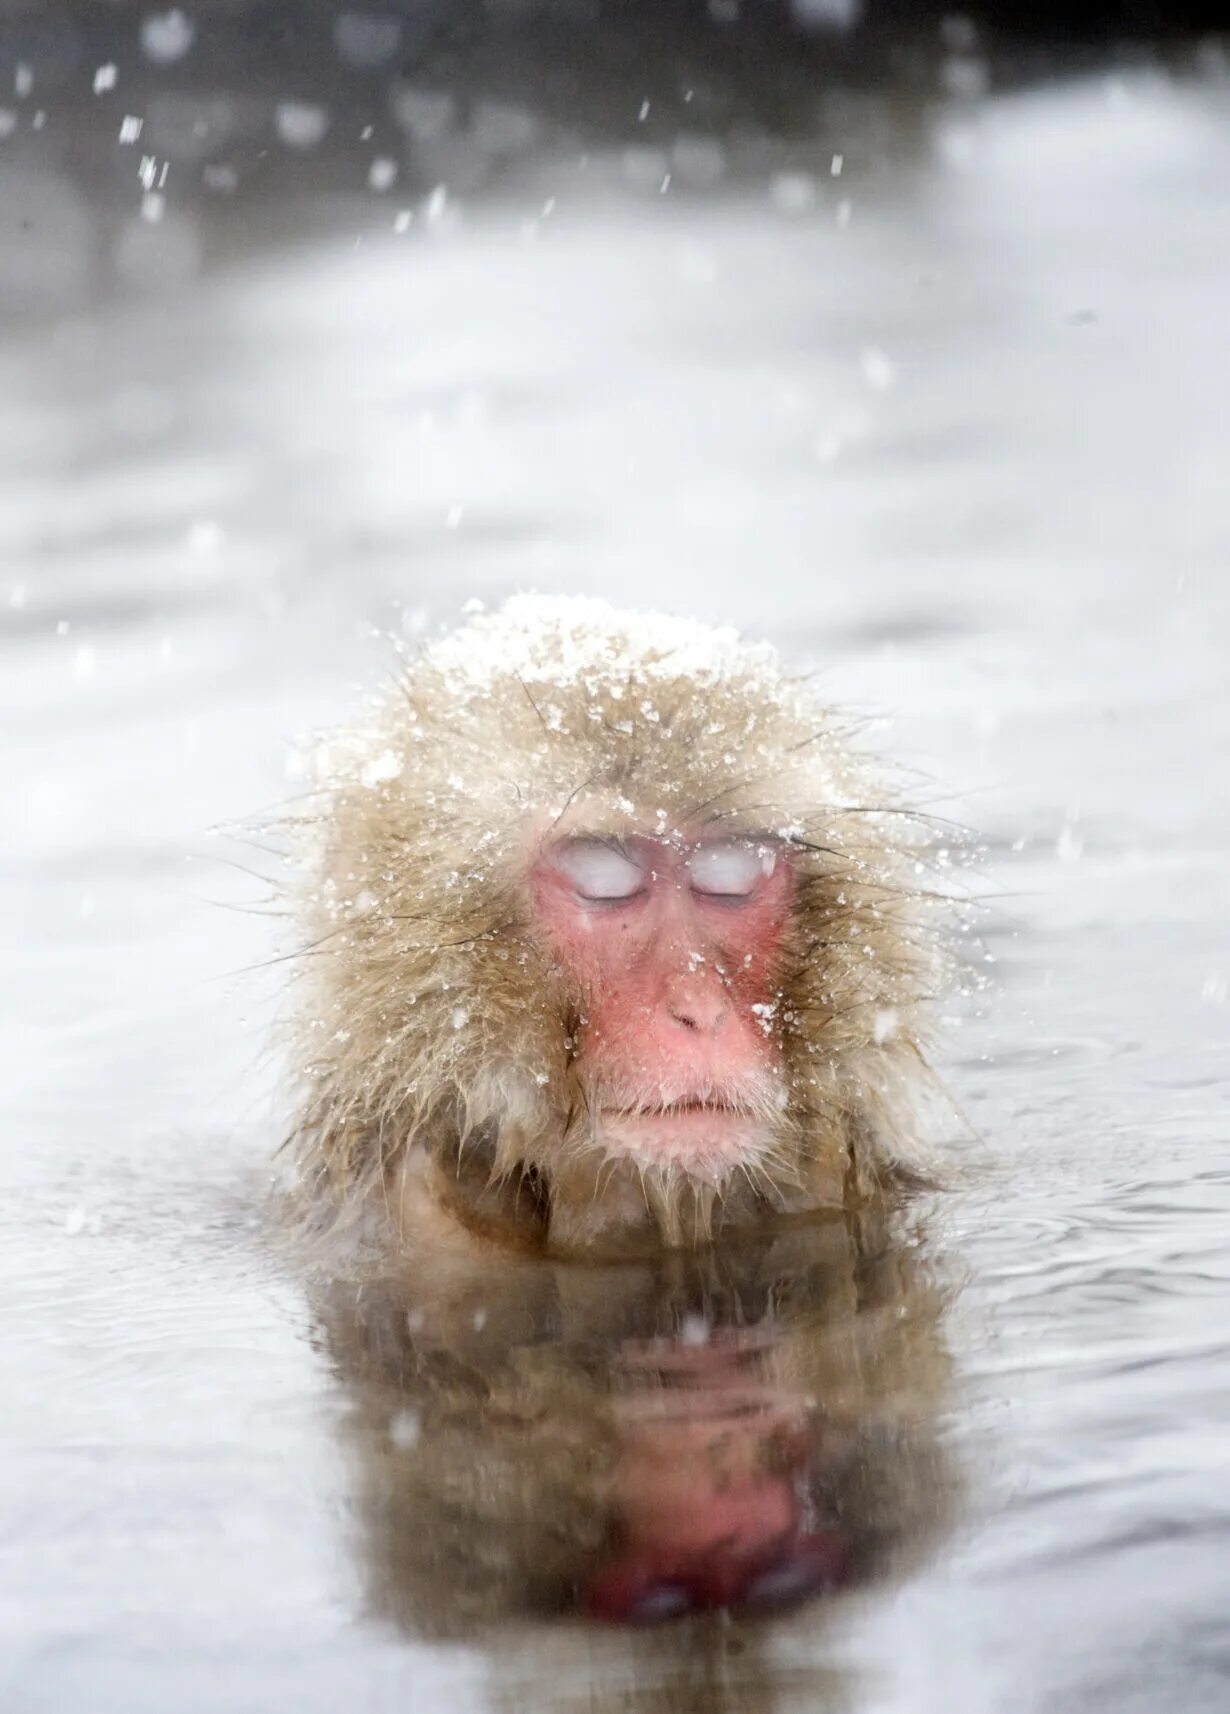 Японские макаки. Японские макаки в горячих источниках зимой. Японский макак в горячем источнике. Обезьянки в горячем источнике. Группа обезьяны в теплой воде слушать